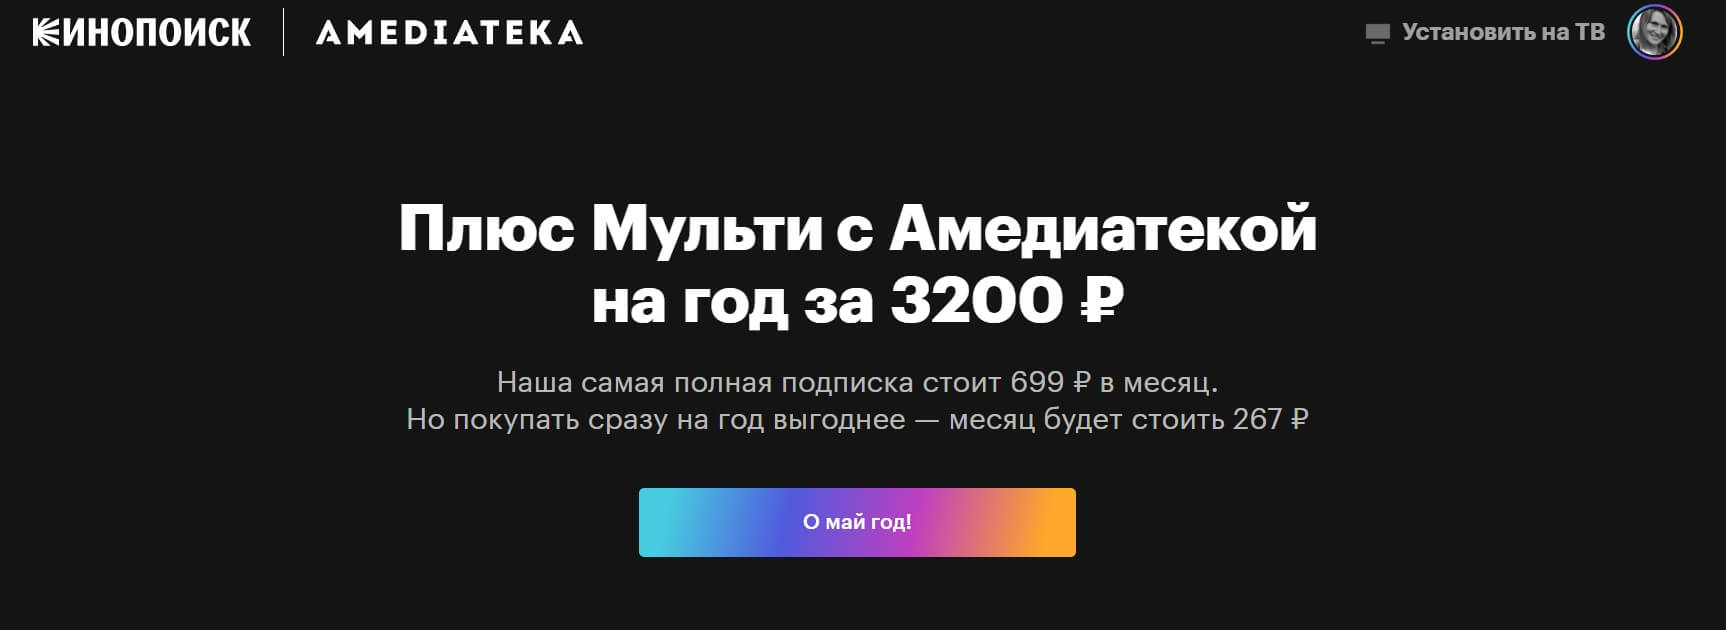 апсейл подписки от Яндекса